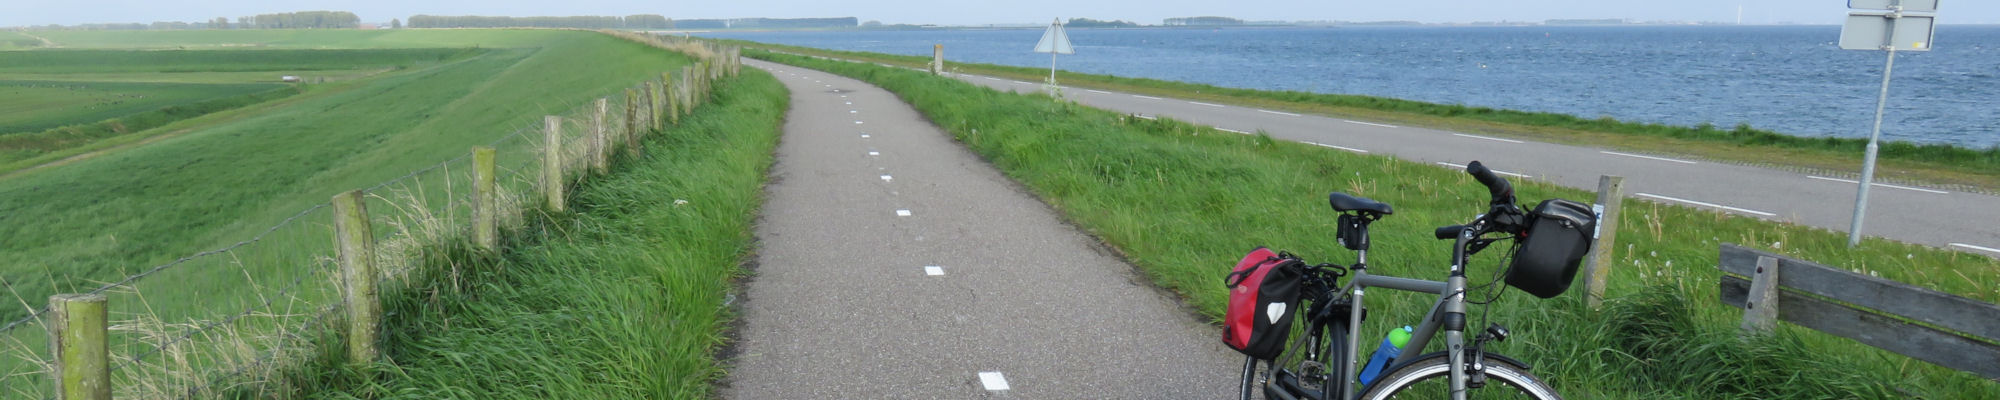 images/slides/bike-infrastructure-holland.jpg